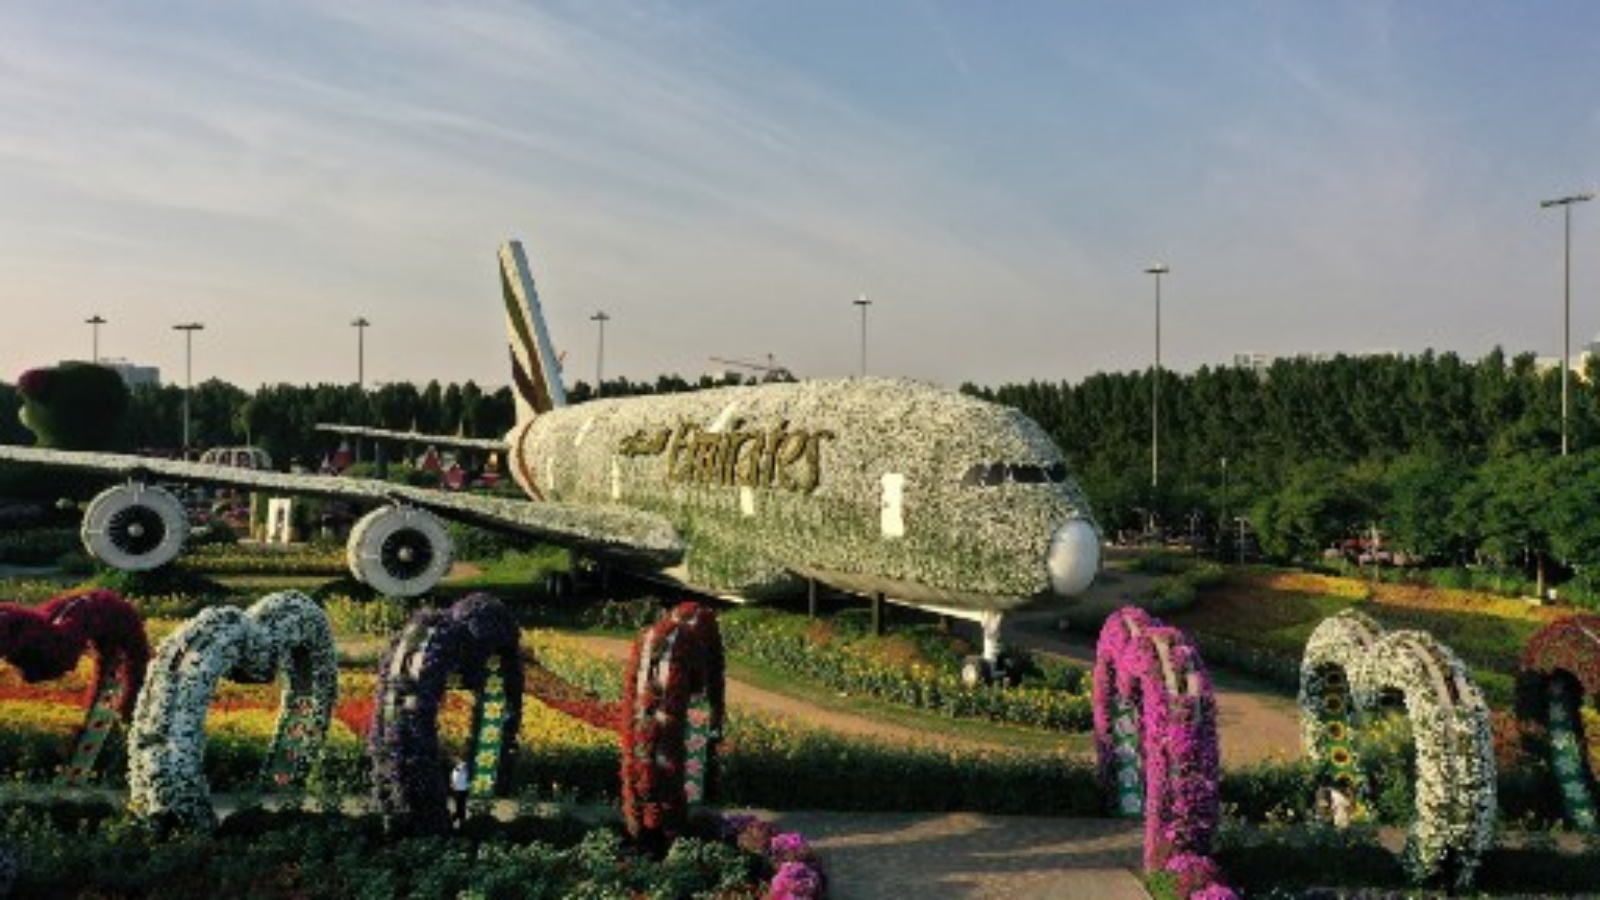 صورة تُظهر هيكلًا مصنوعًا من زهور لطائرة طيران الإمارات من طراز إيرباص A380 وصلت إلى كتاب غينيس للأرقام القياسية ، في حديقة دبي المعجزة ، أكبر حديقة زهور في العالم ، في الإمارات العربية المتحدة في 11 نوفمبر 2020.